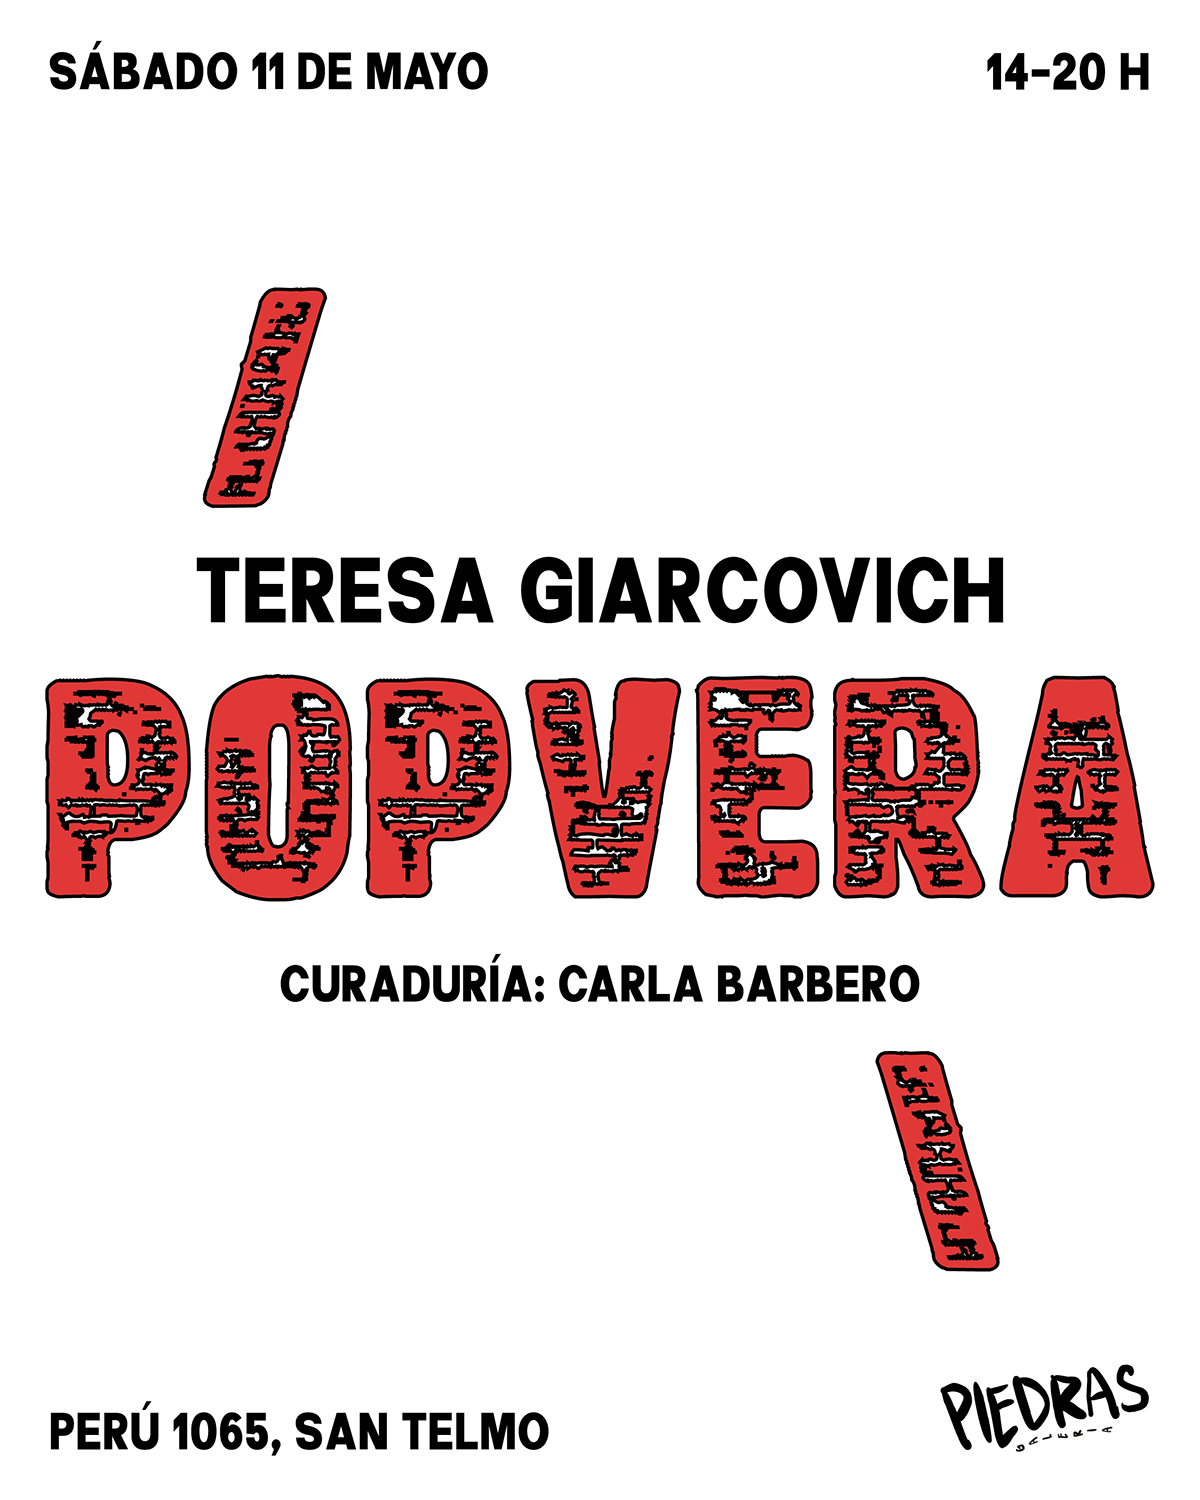 Teresa Giarcovich